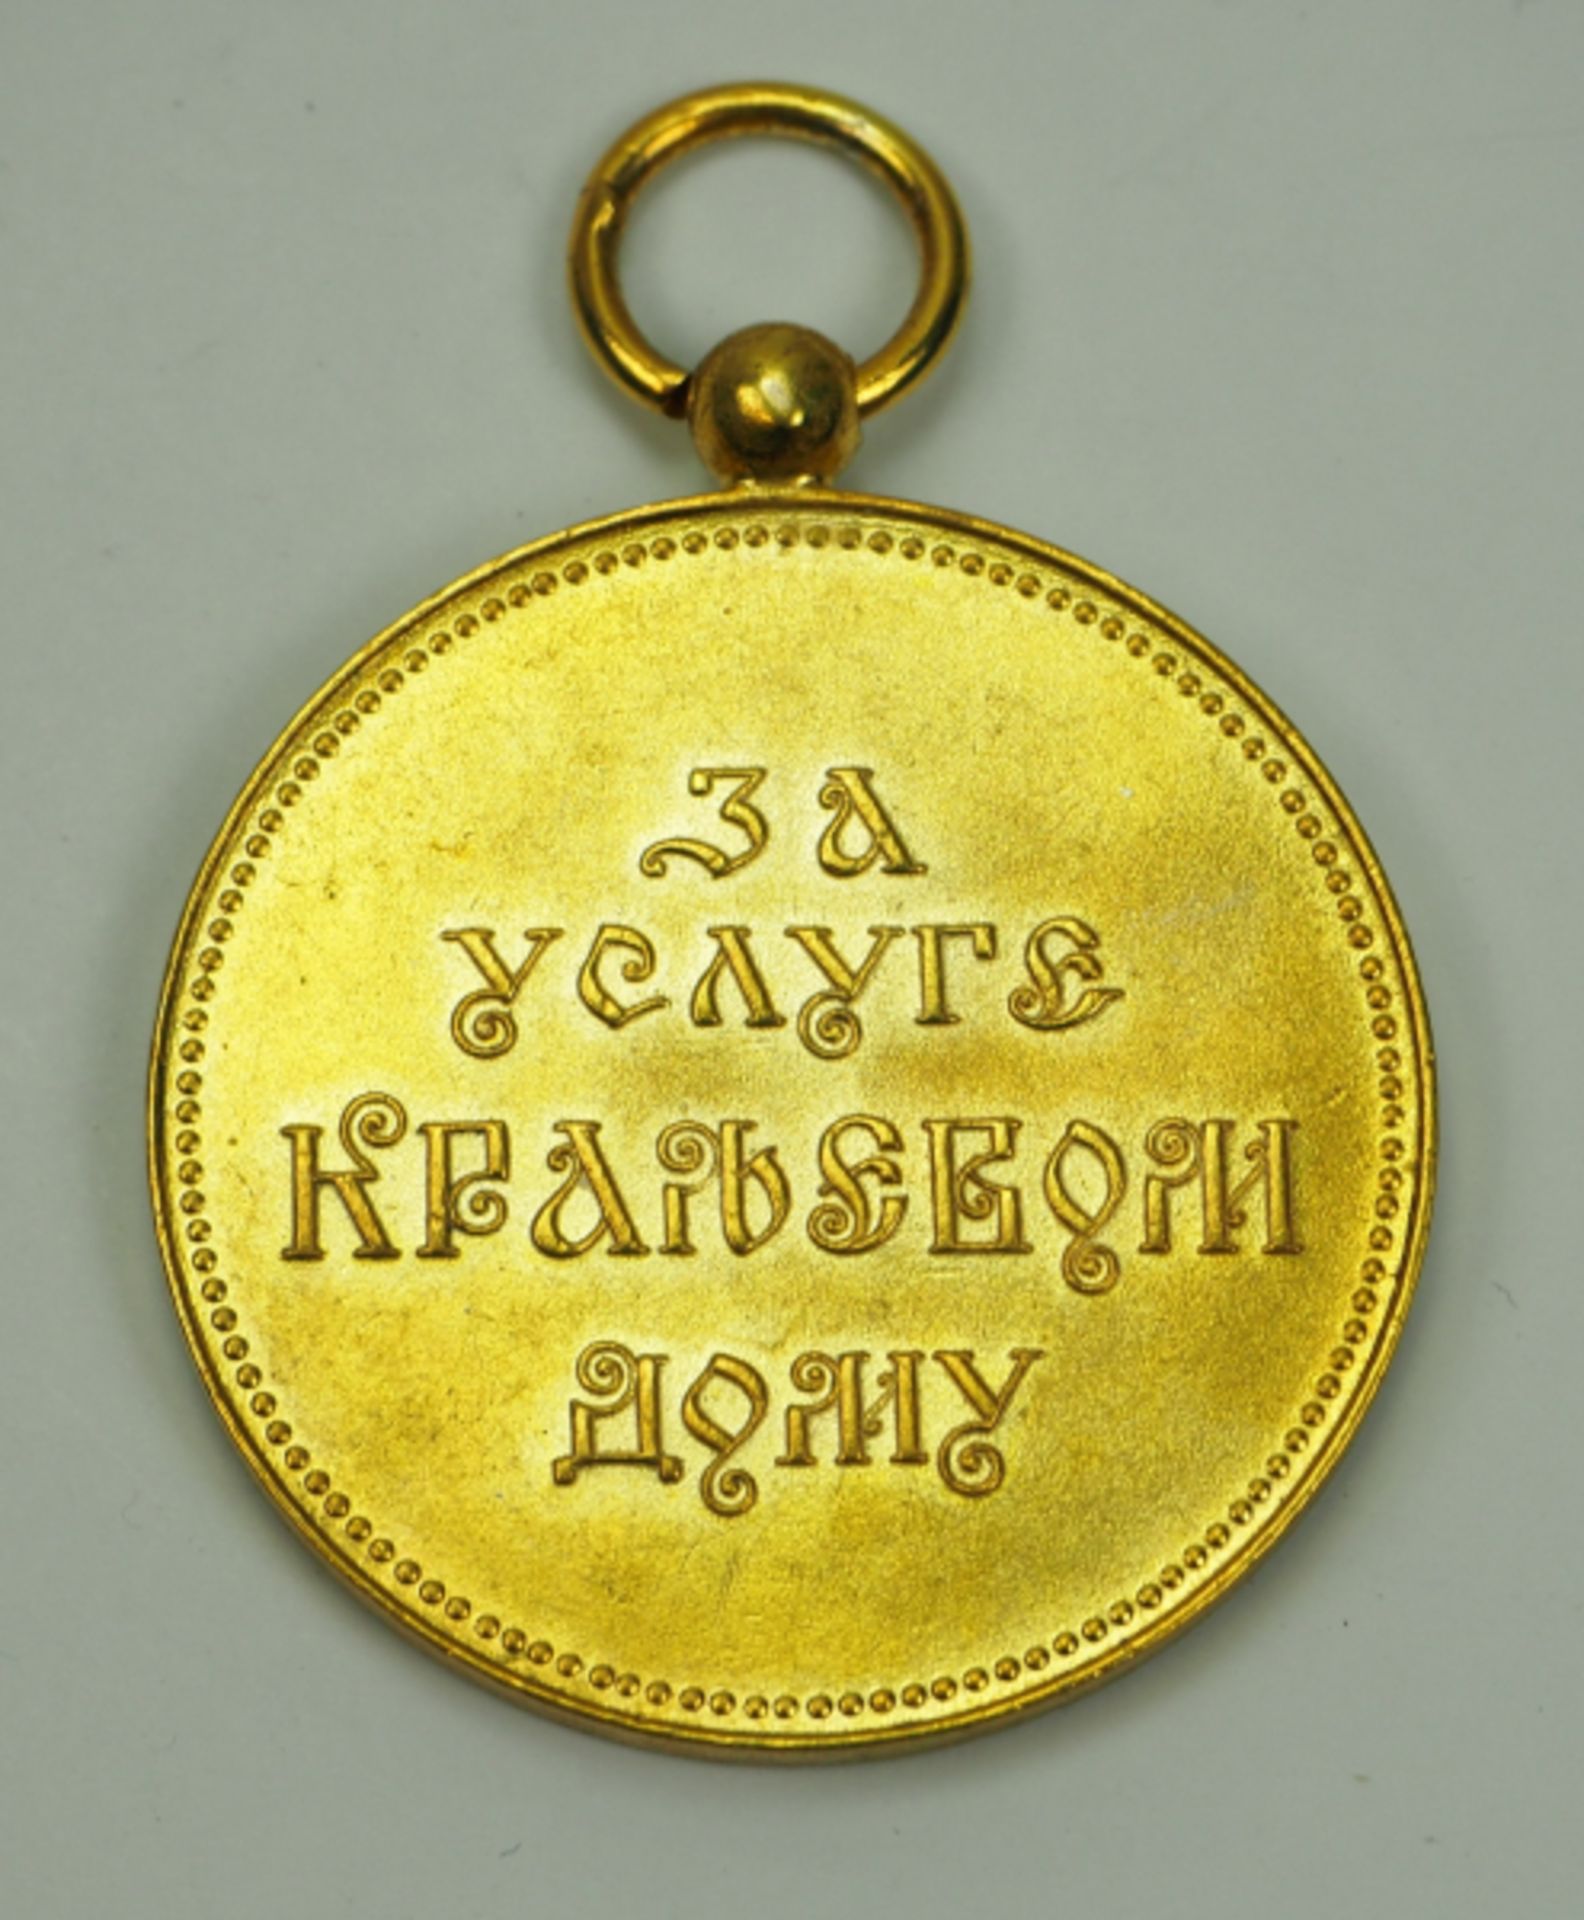 Jugoslawien: Königliche Haushaltsmedaille, 4. Typ (1921-1927 / 1934-41), in Gold.Vergoldet. - Image 3 of 3